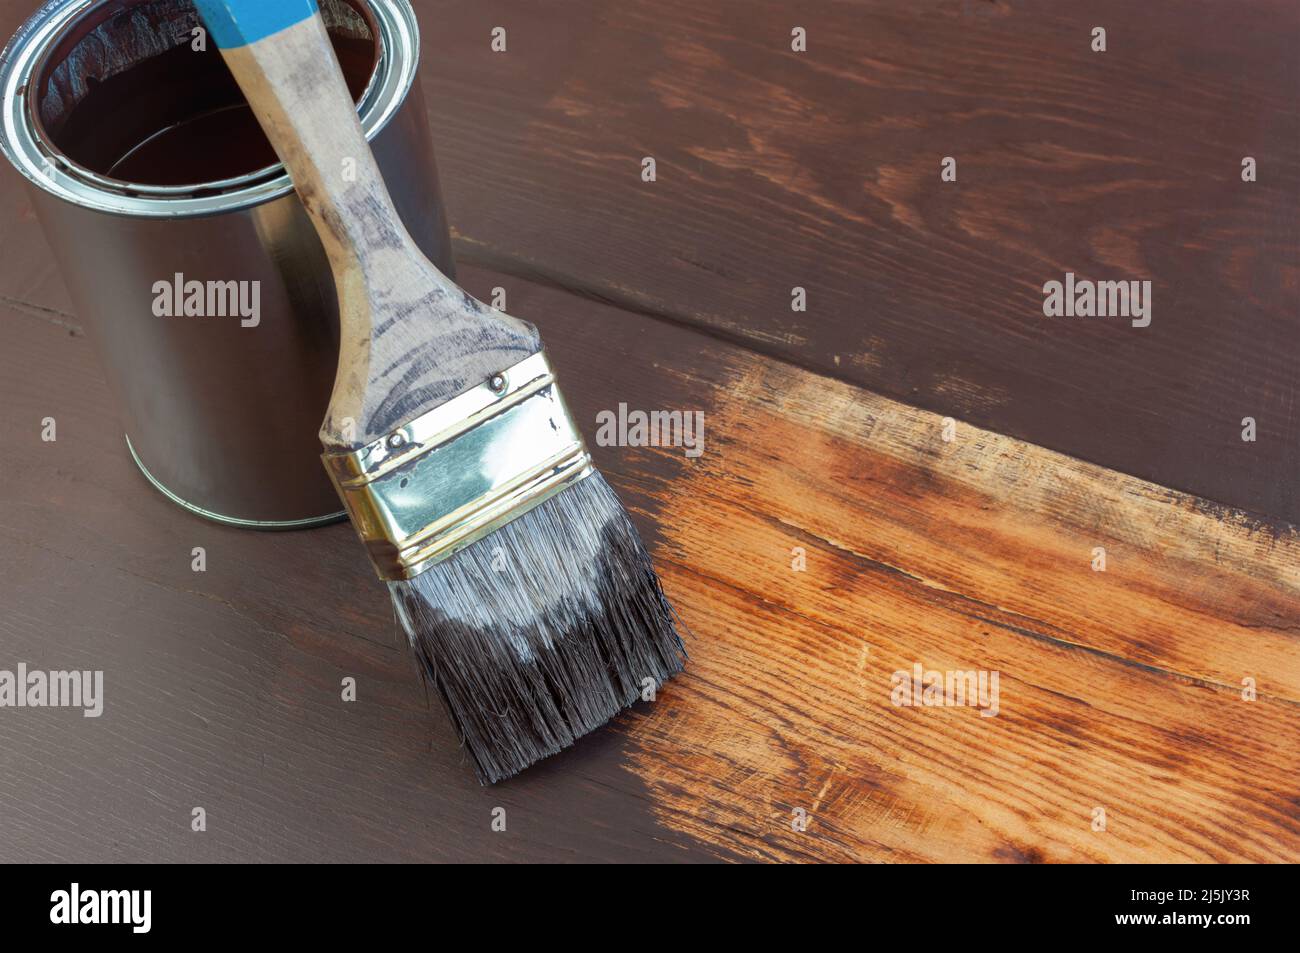 Pinte el cepillo y la lata de pintura sobre la superficie de madera Foto de stock